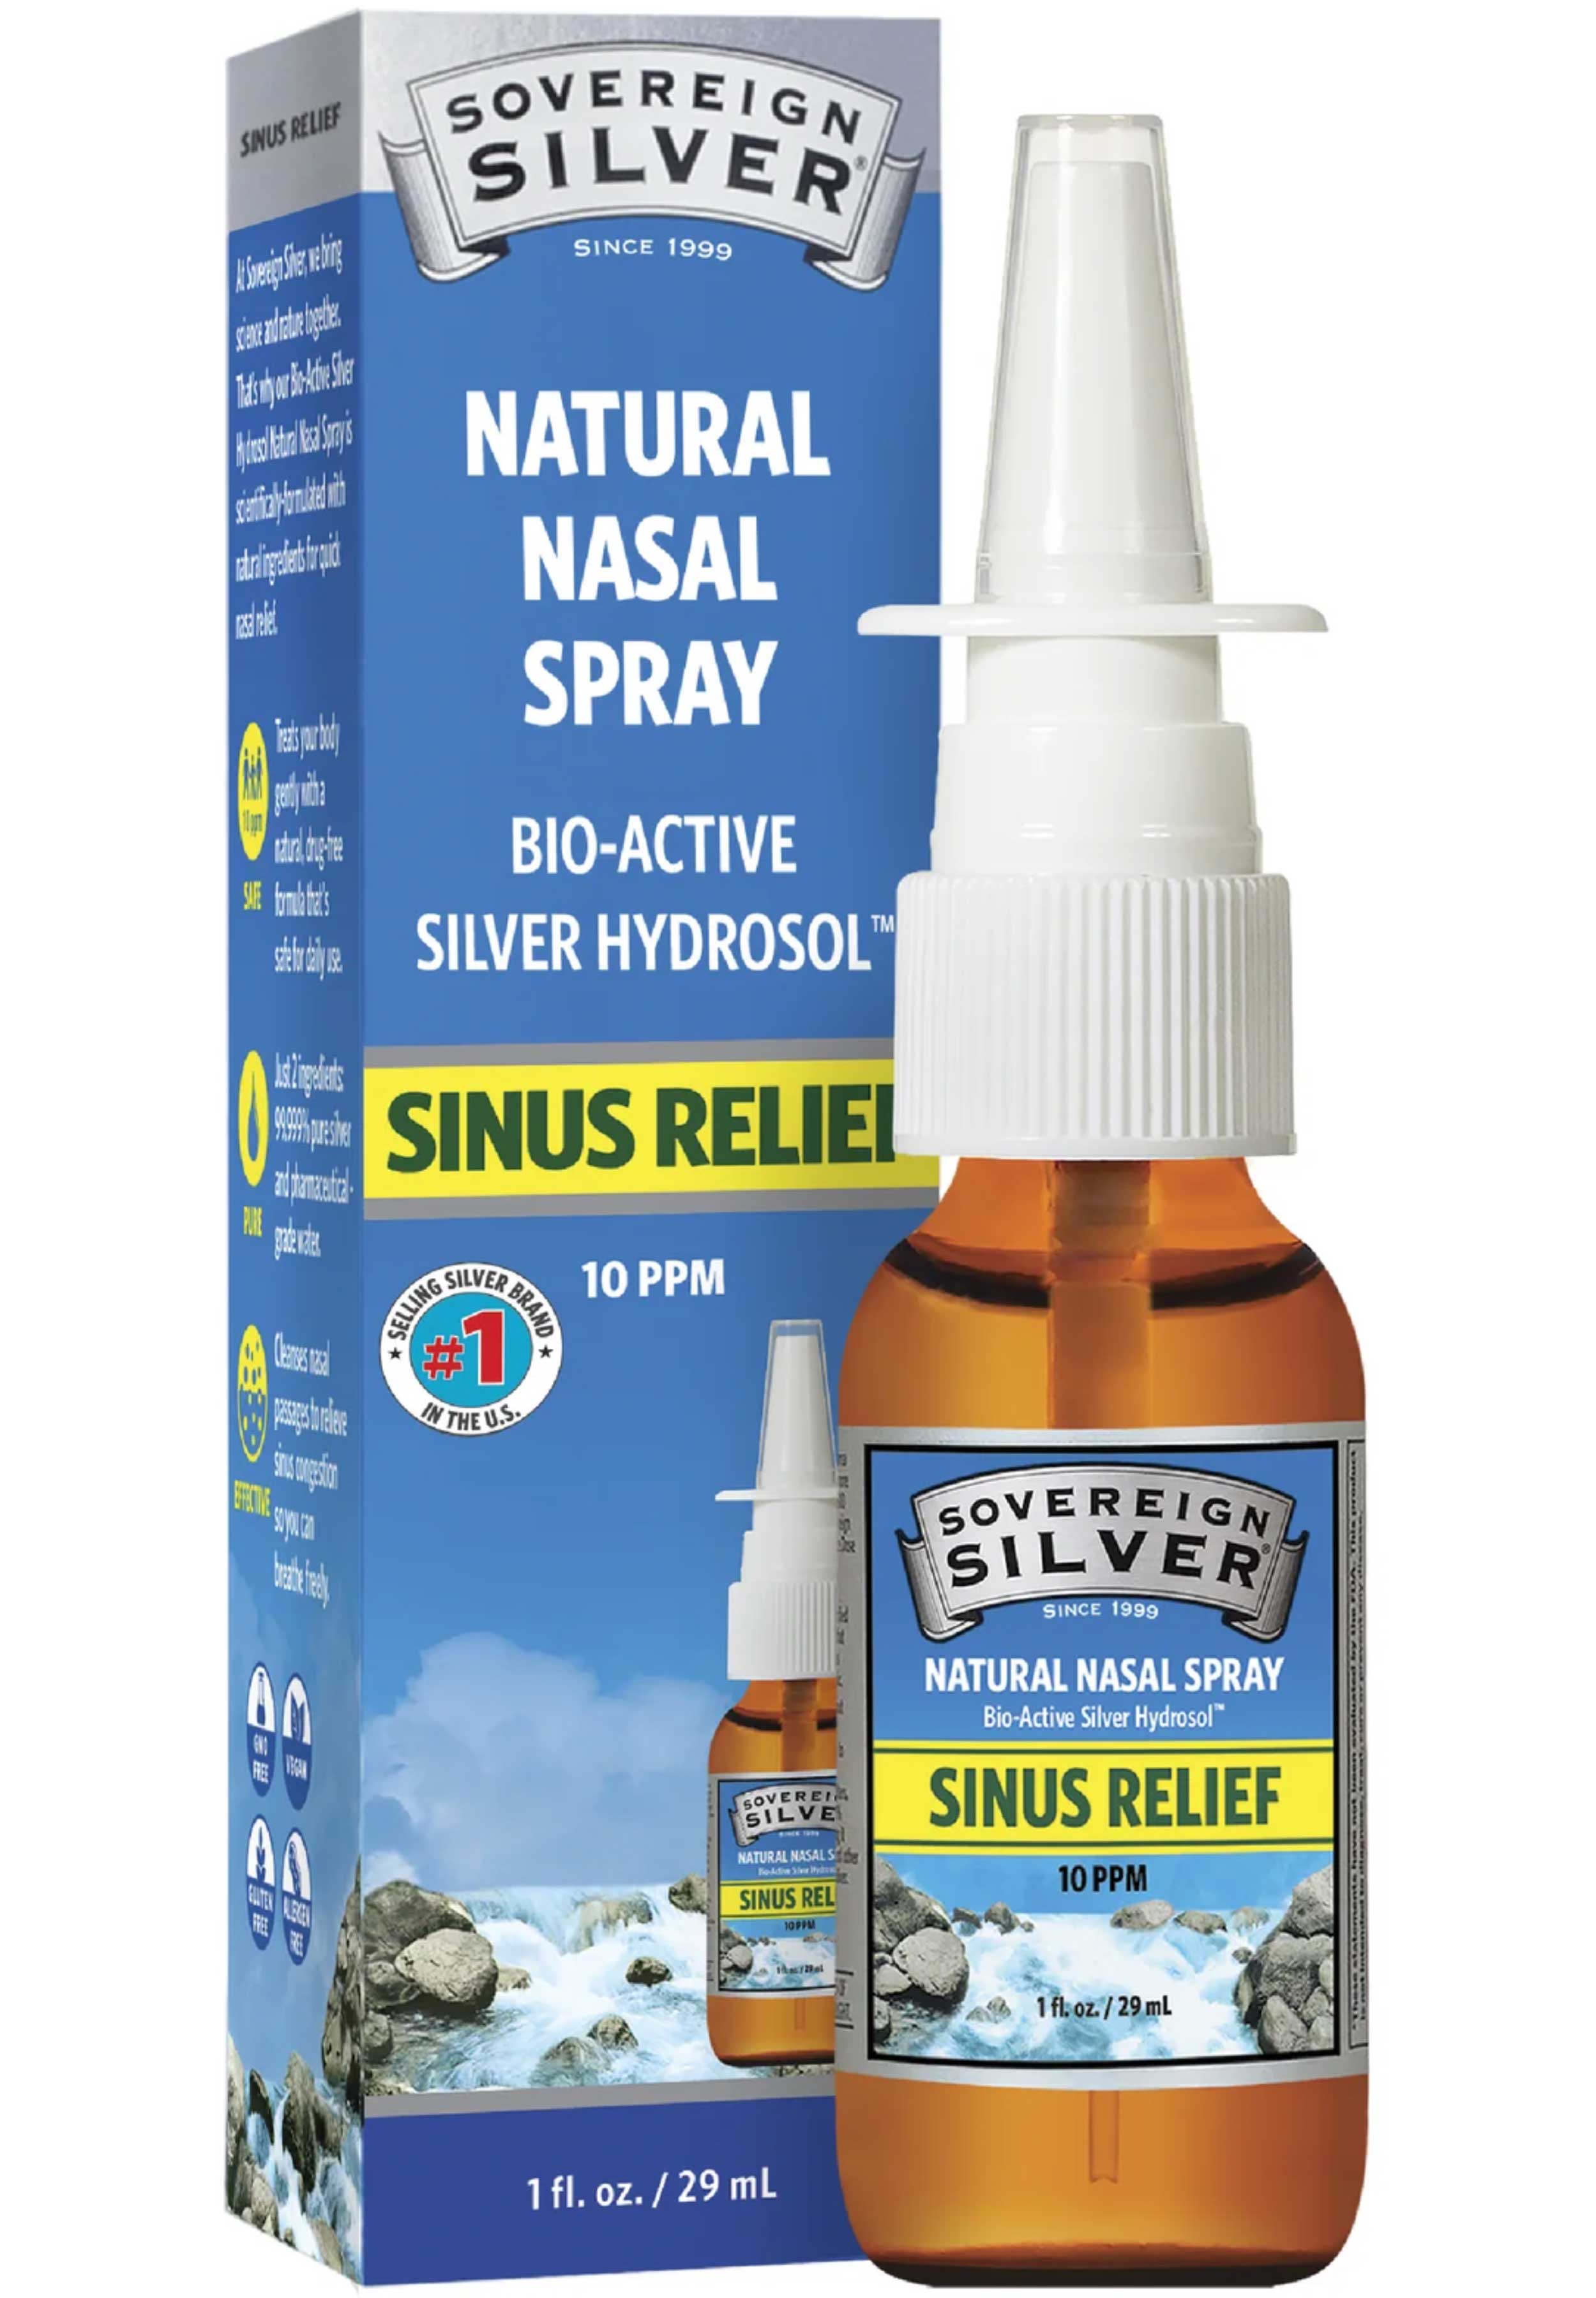 Sovereign Silver Bio-Active Silver Hydrosol - Natural Nasal Spray